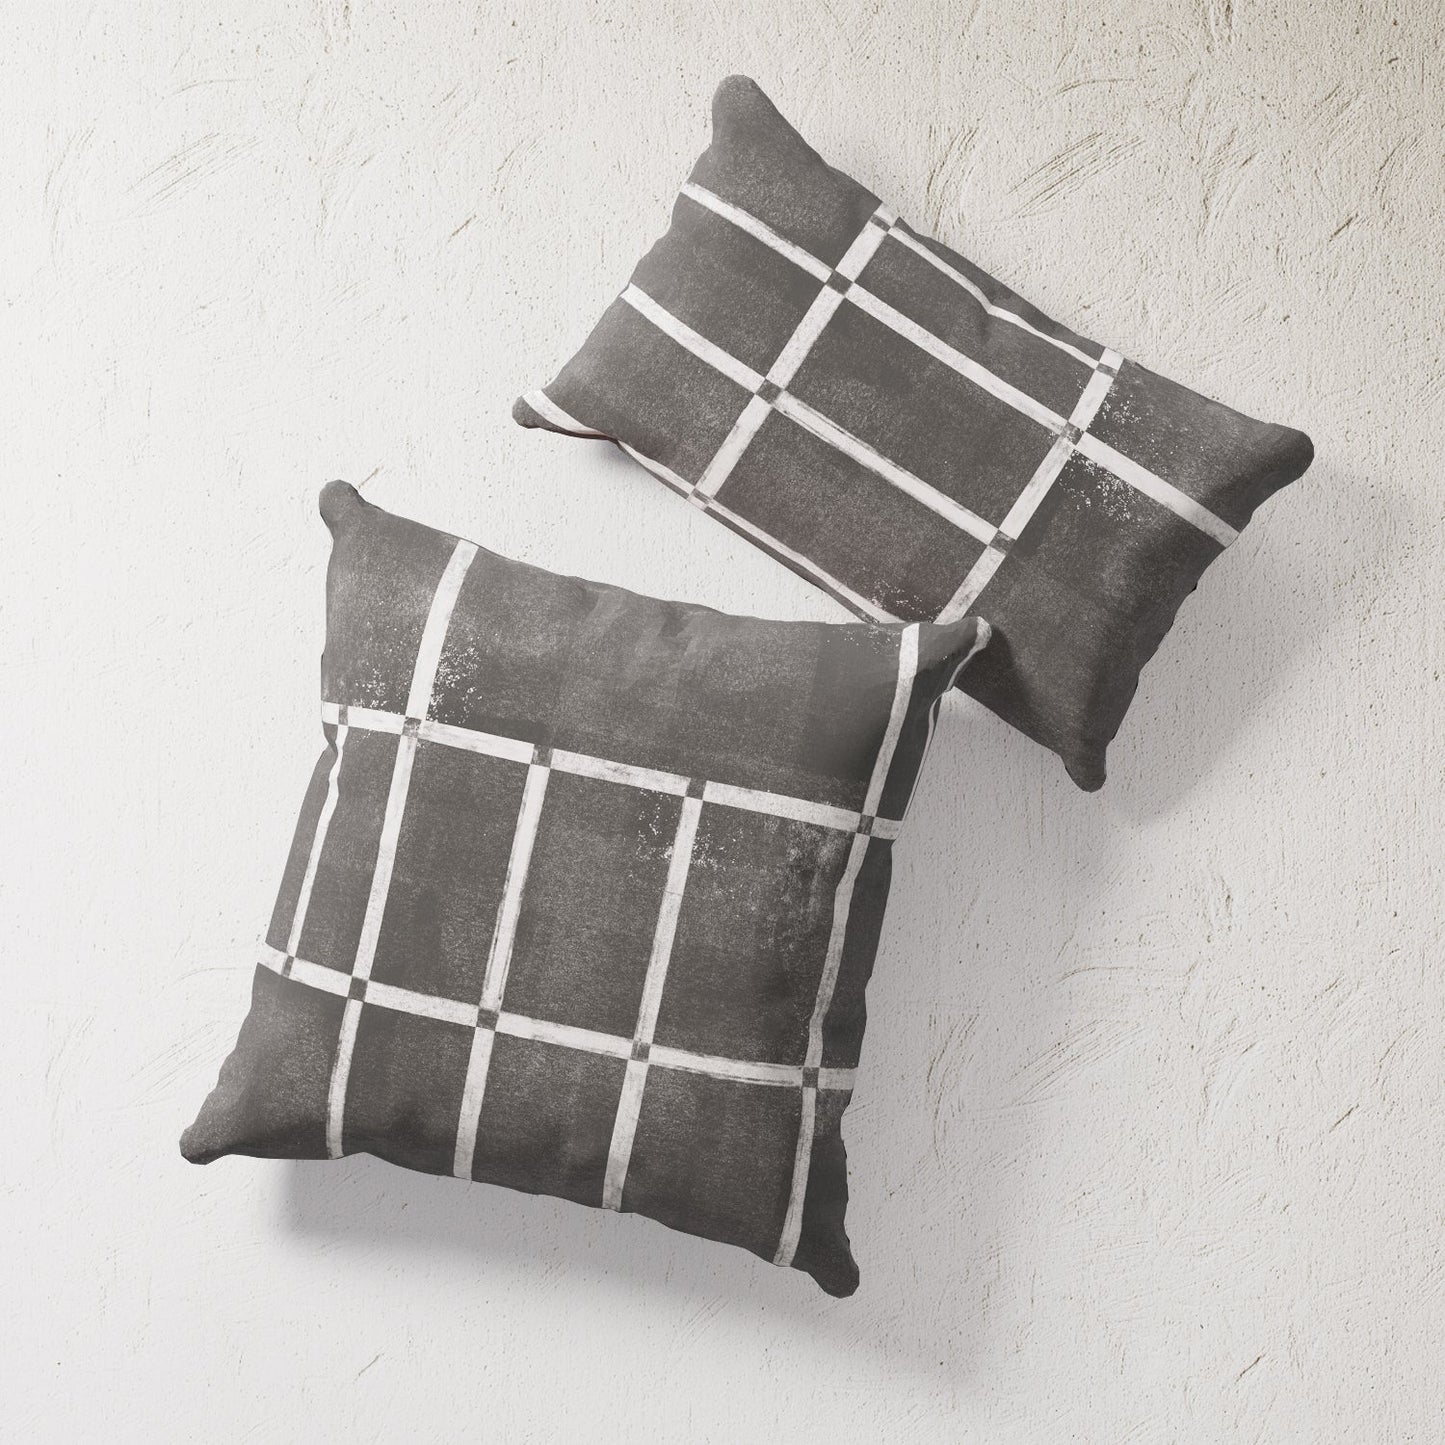 Indoor / Outdoor Pillow - Black & White Mondrian Inspired Art